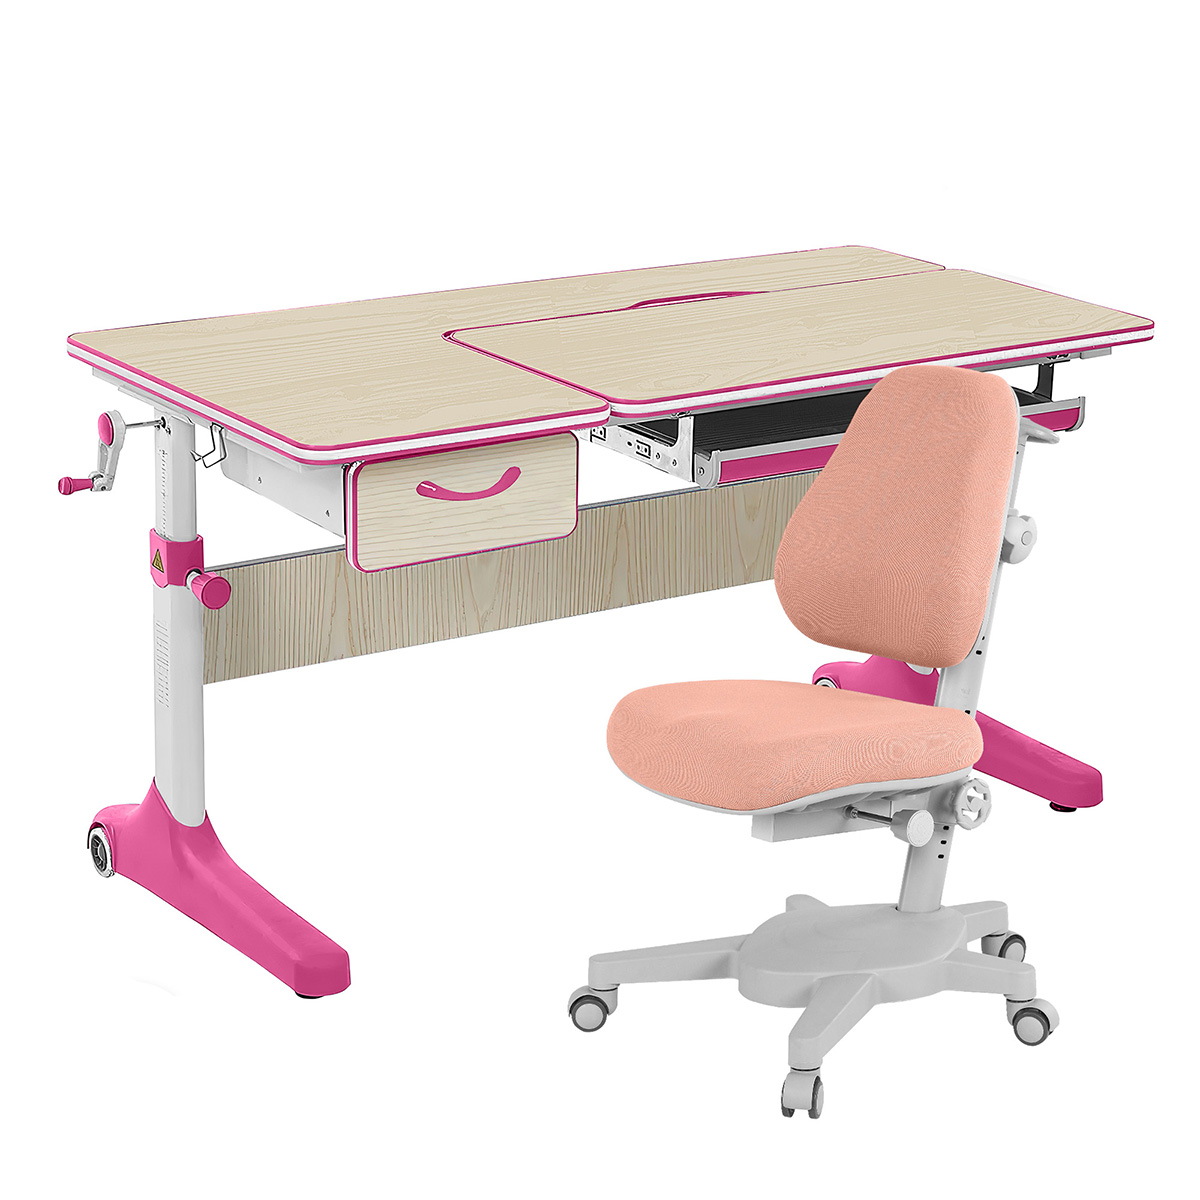 Комплект парта Anatomica Uniqa Lite клен/розовый со светло-розовым креслом Armata парта anatomica uniqa lite клен розовый c розовым креслом figra